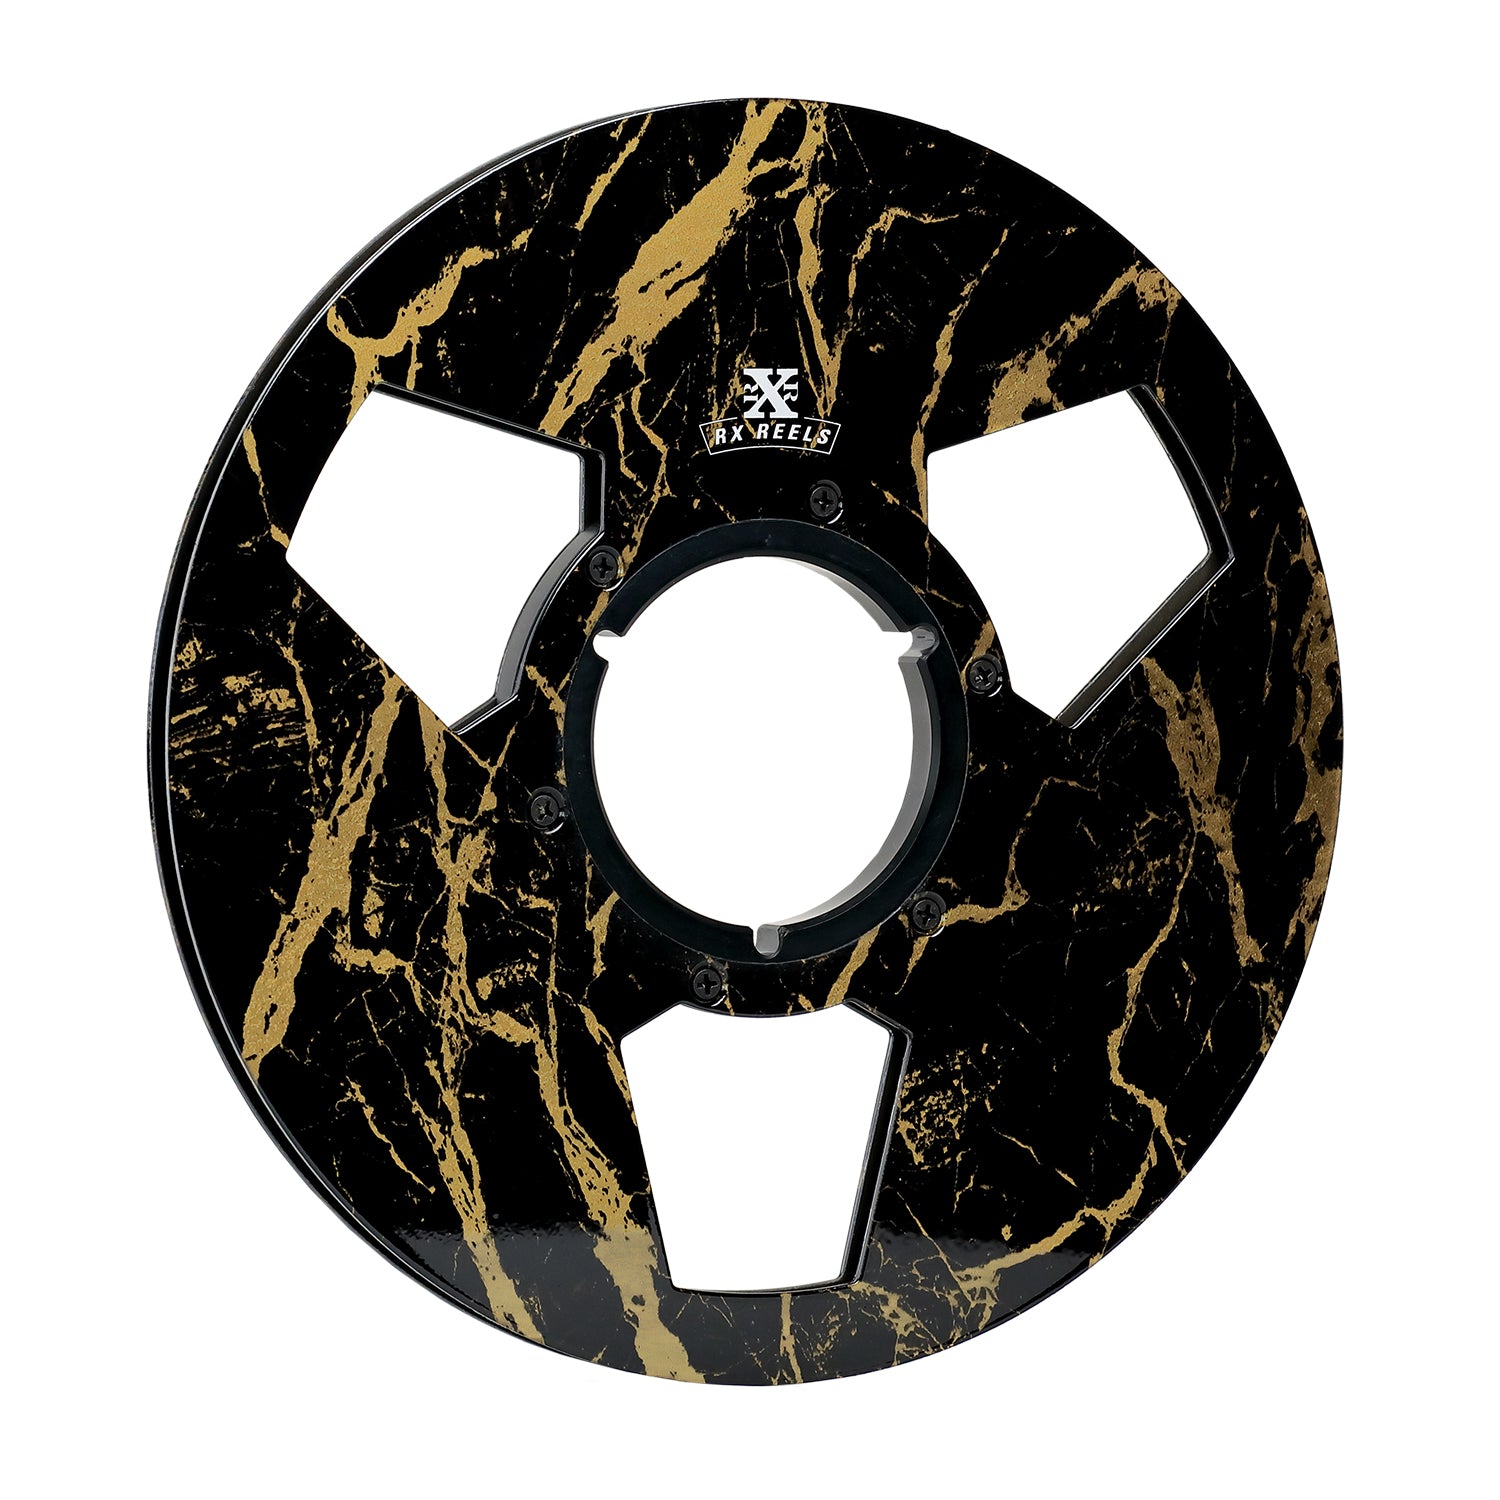 10.5" Carbon Fiber Reel RX Reels Black & Gold Vein Marble